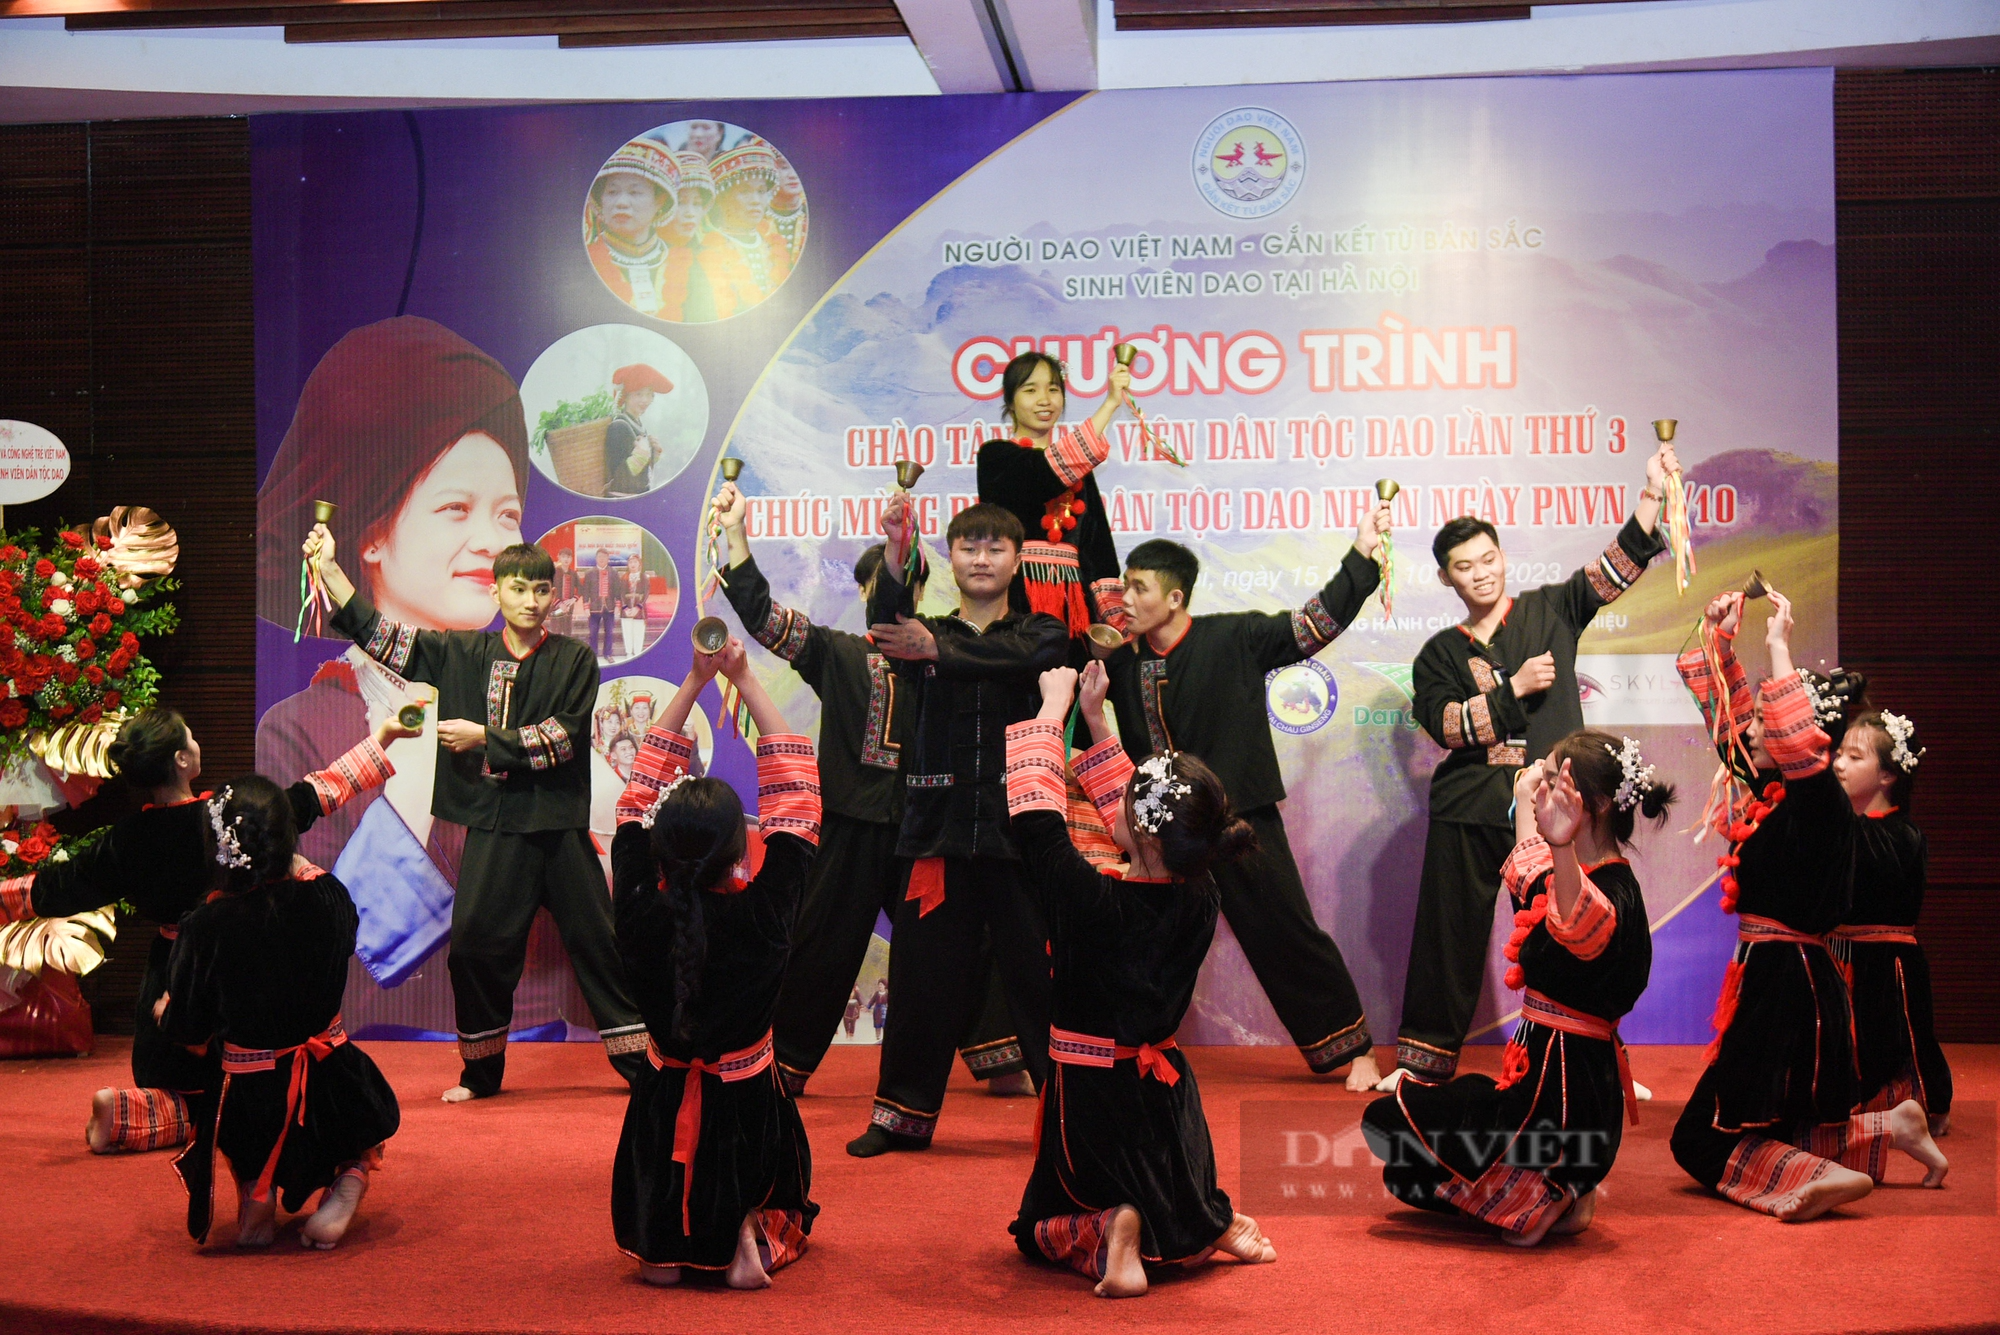 Đủ cung bậc cảm xúc tại lễ chào đón tân sinh viên dân tộc Dao tại Hà Nội lần thứ 3 - Ảnh 1.